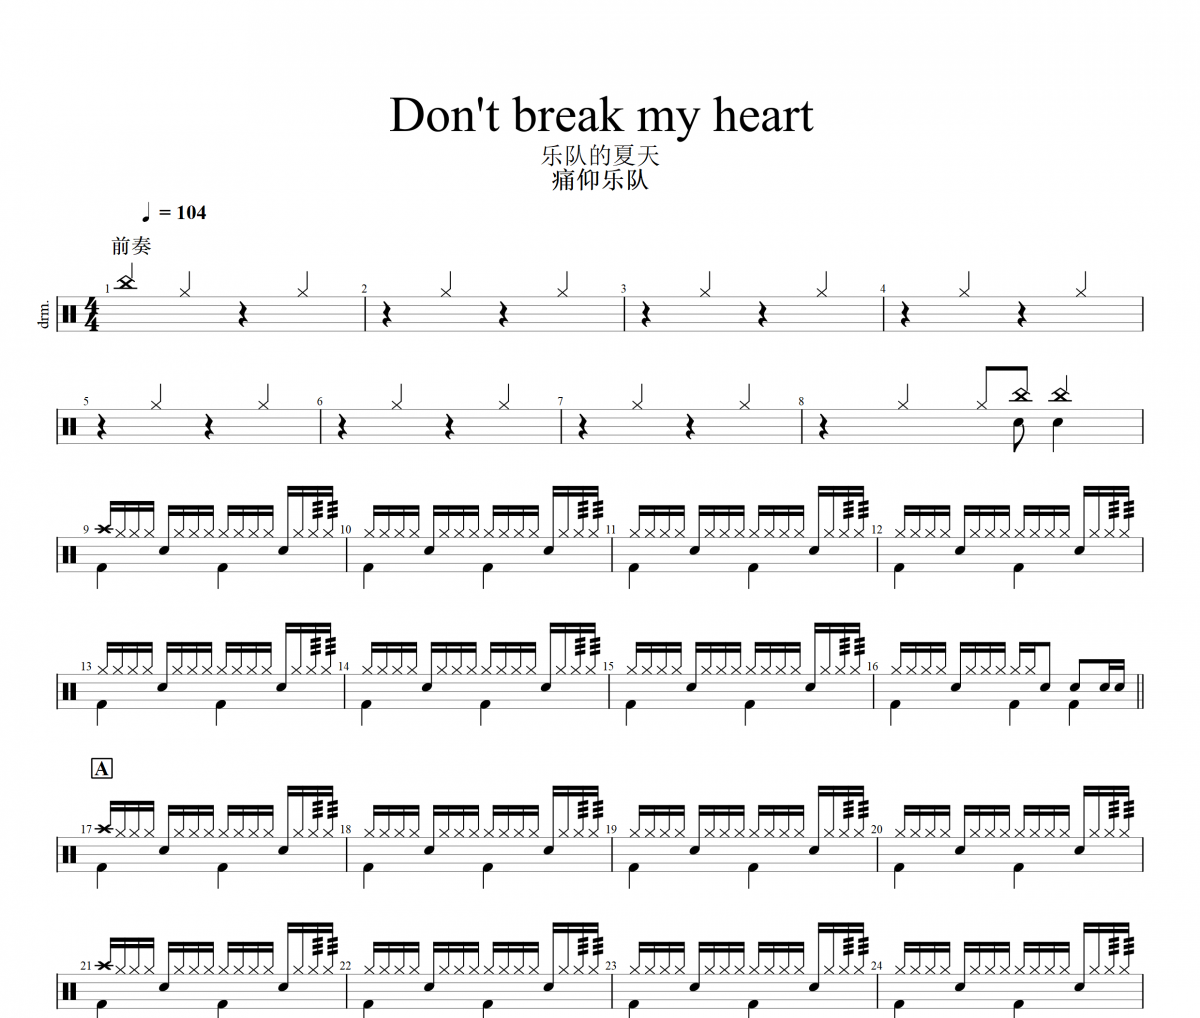 痛仰乐队-Don't break my heart(乐队的夏天)架子鼓|爵士鼓|鼓谱+动态视频